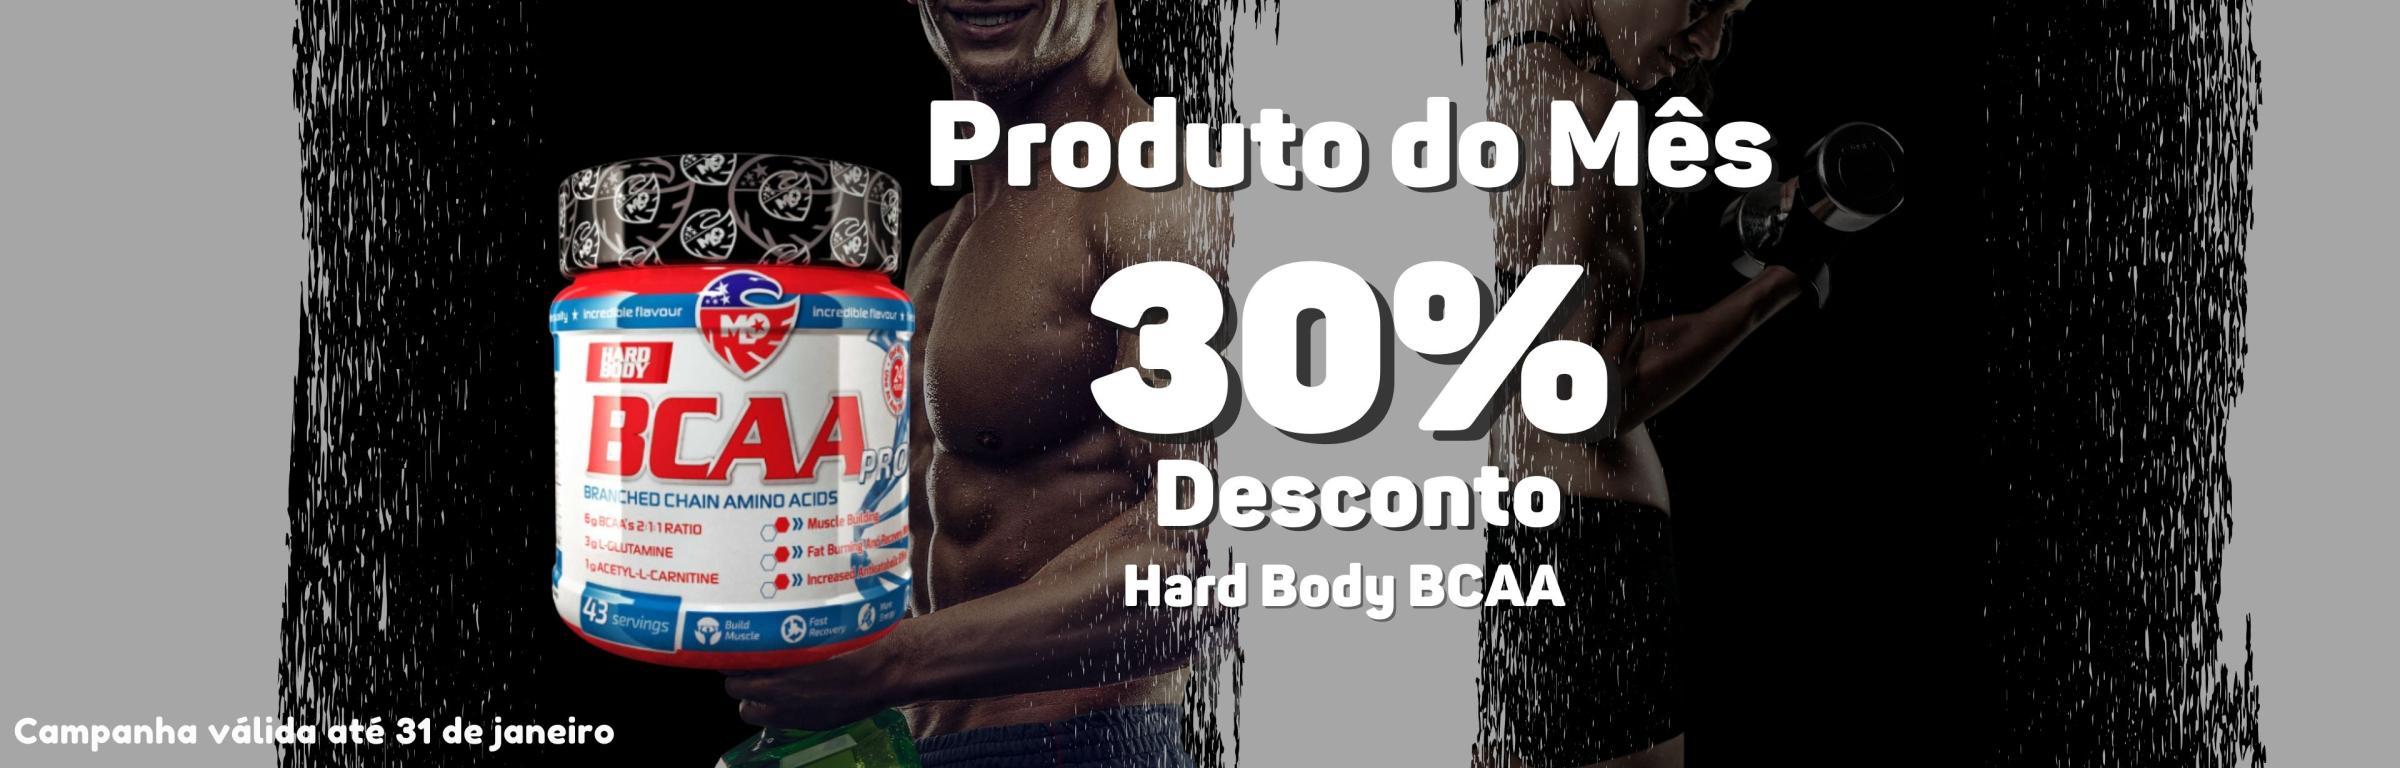 Produto do mês : Hard Body Bcaa  Pro 30% desconto - Produto do mês janeiro 2022 : Hard Body Bcaa  Pro 30% desconto